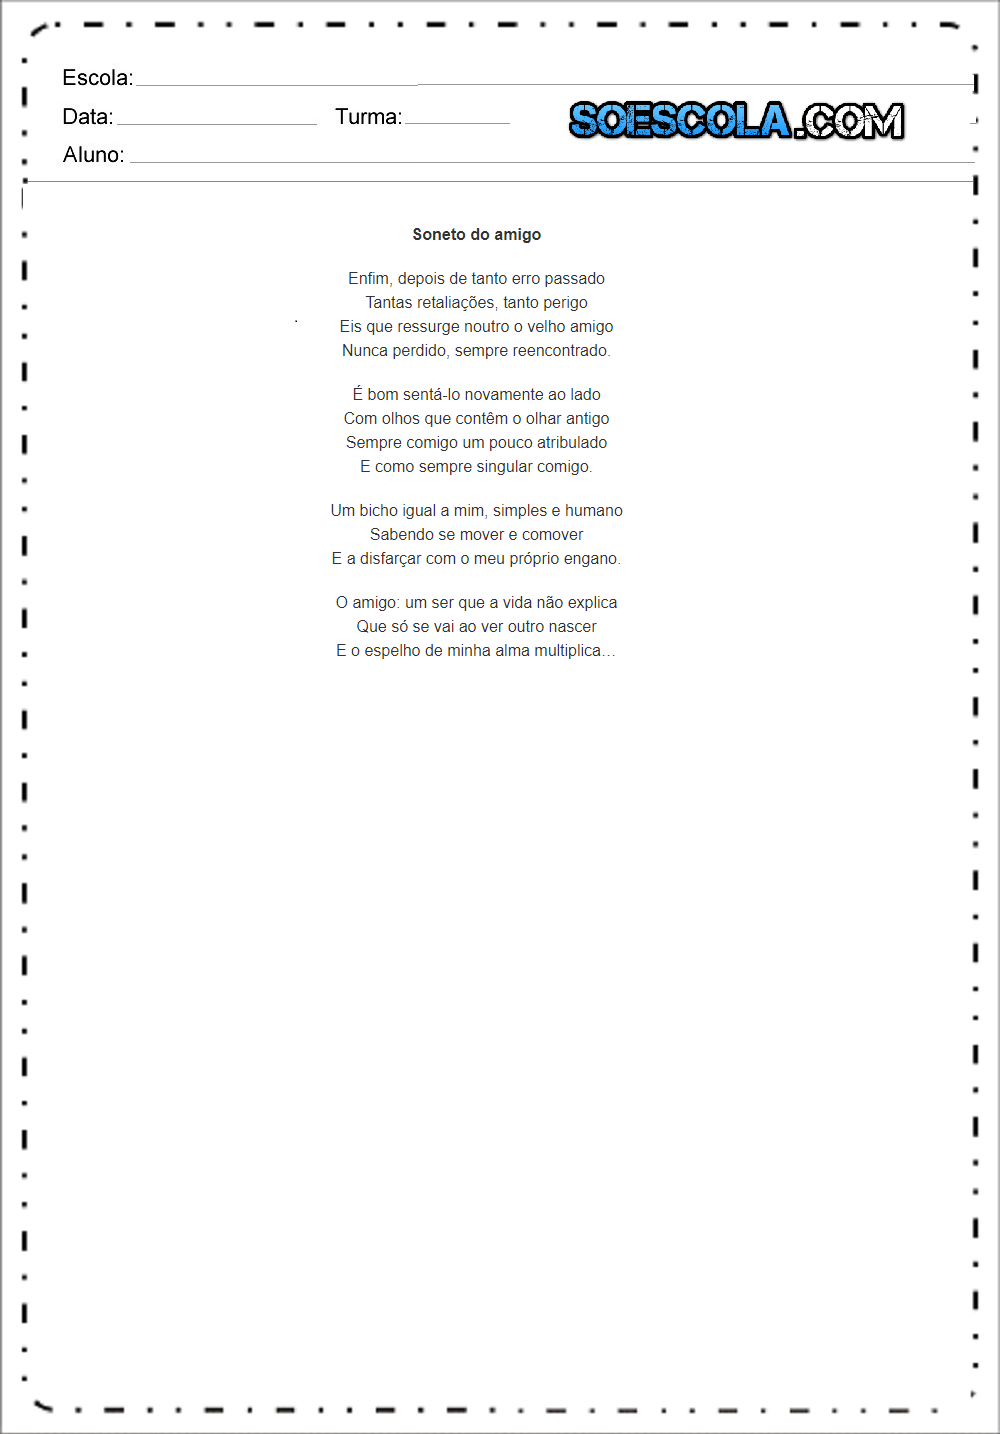 Poemas de Vinicius de Moraes - Poemas para imprimir